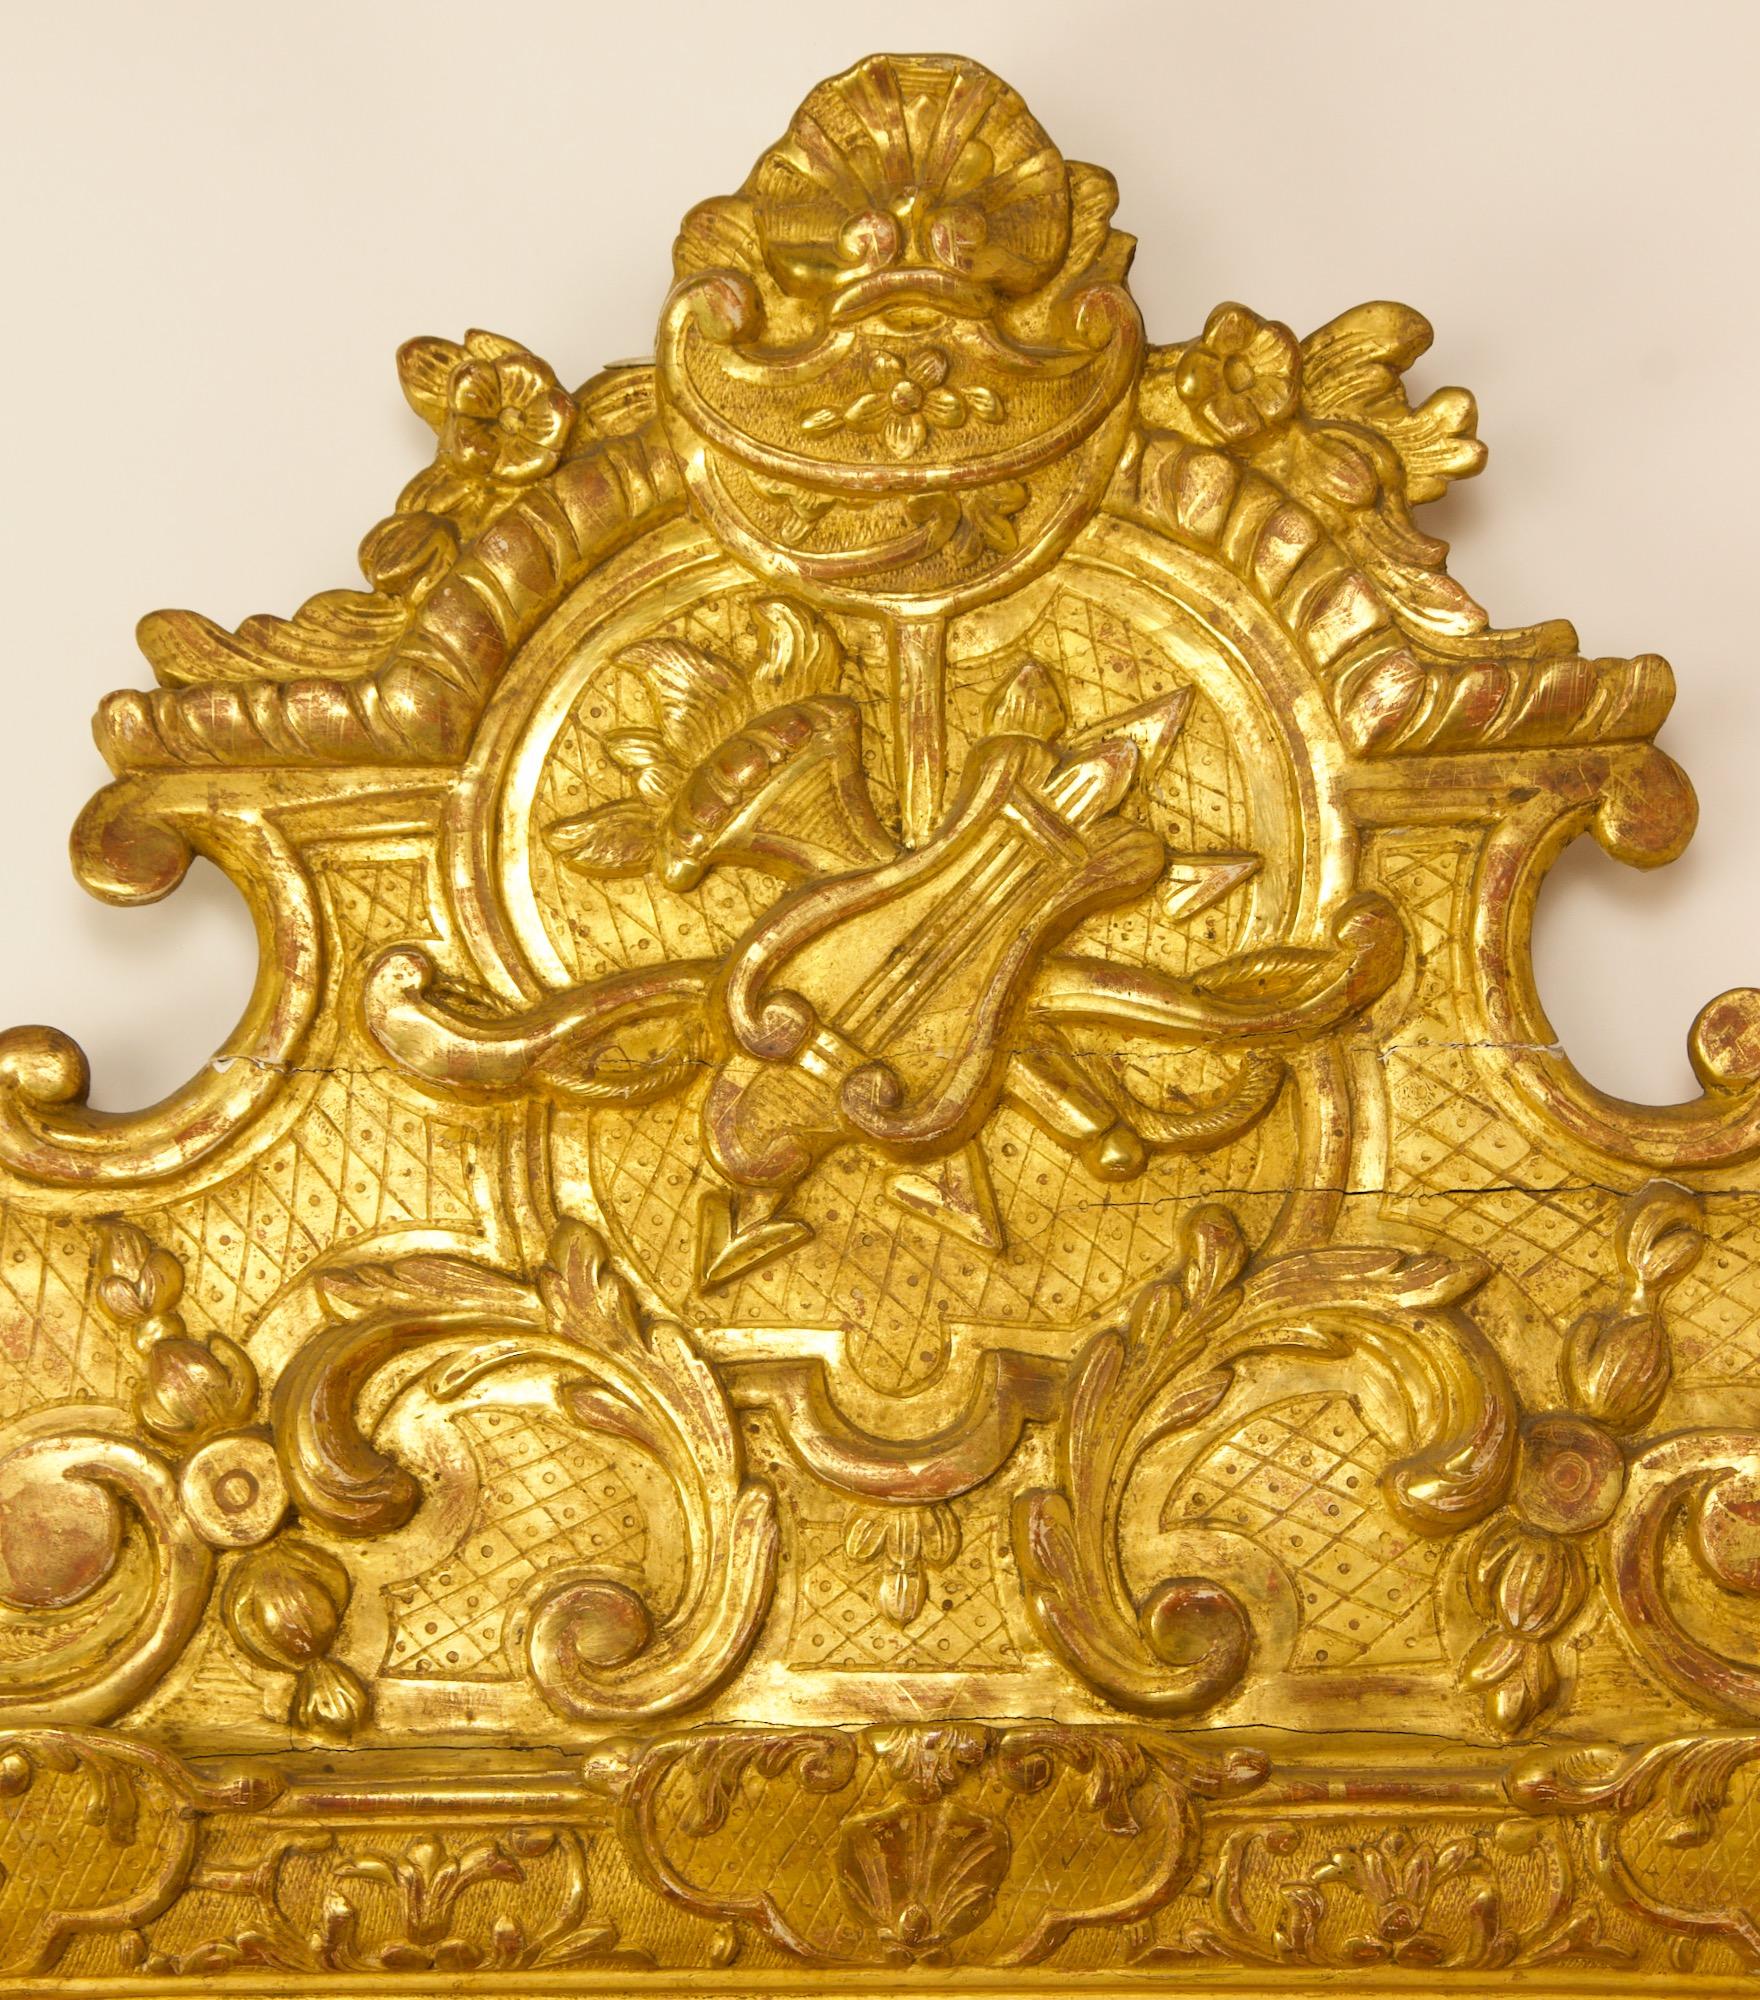 Frühes 18. Jahrhundert Französisch regence Liebe Symbol Vergoldung Spiegel.

Eine frühe 18. Jahrhundert Regence Vergoldung Spiegel mit einer rechteckigen Platte (17,72 in. x 13,38 in.) innerhalb einer konformen Rahmen mit einem geschnitzten